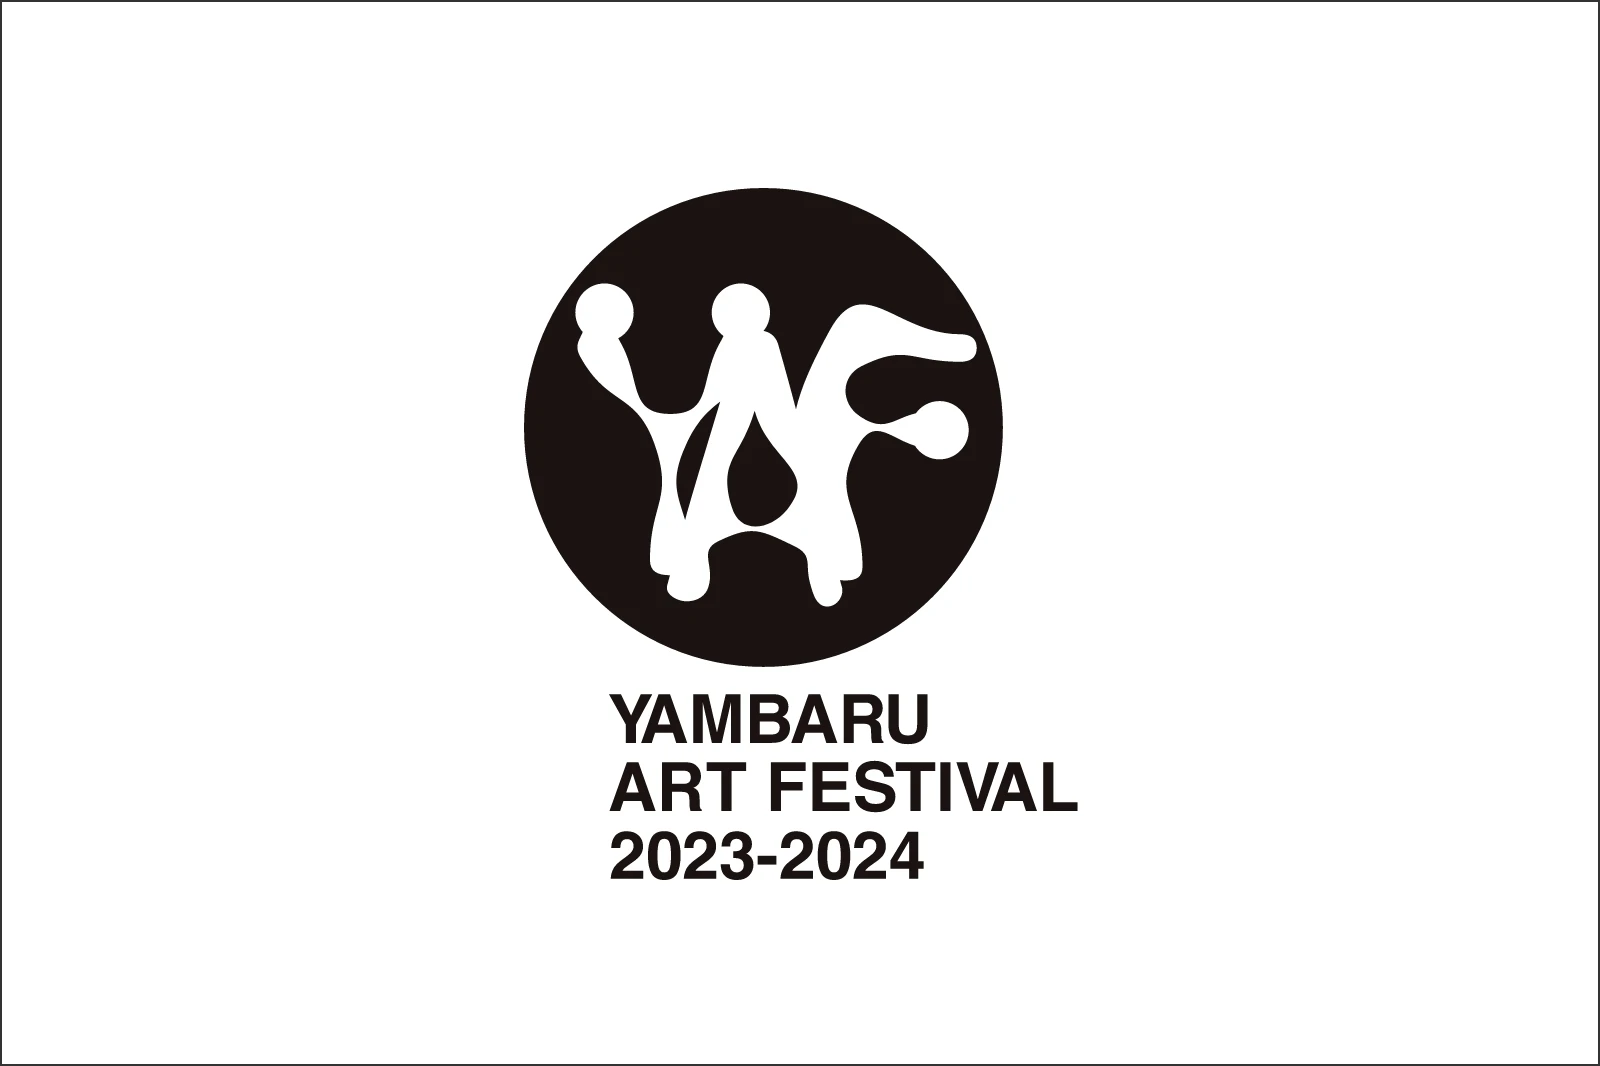 YAMBARU ART FESTIVAL